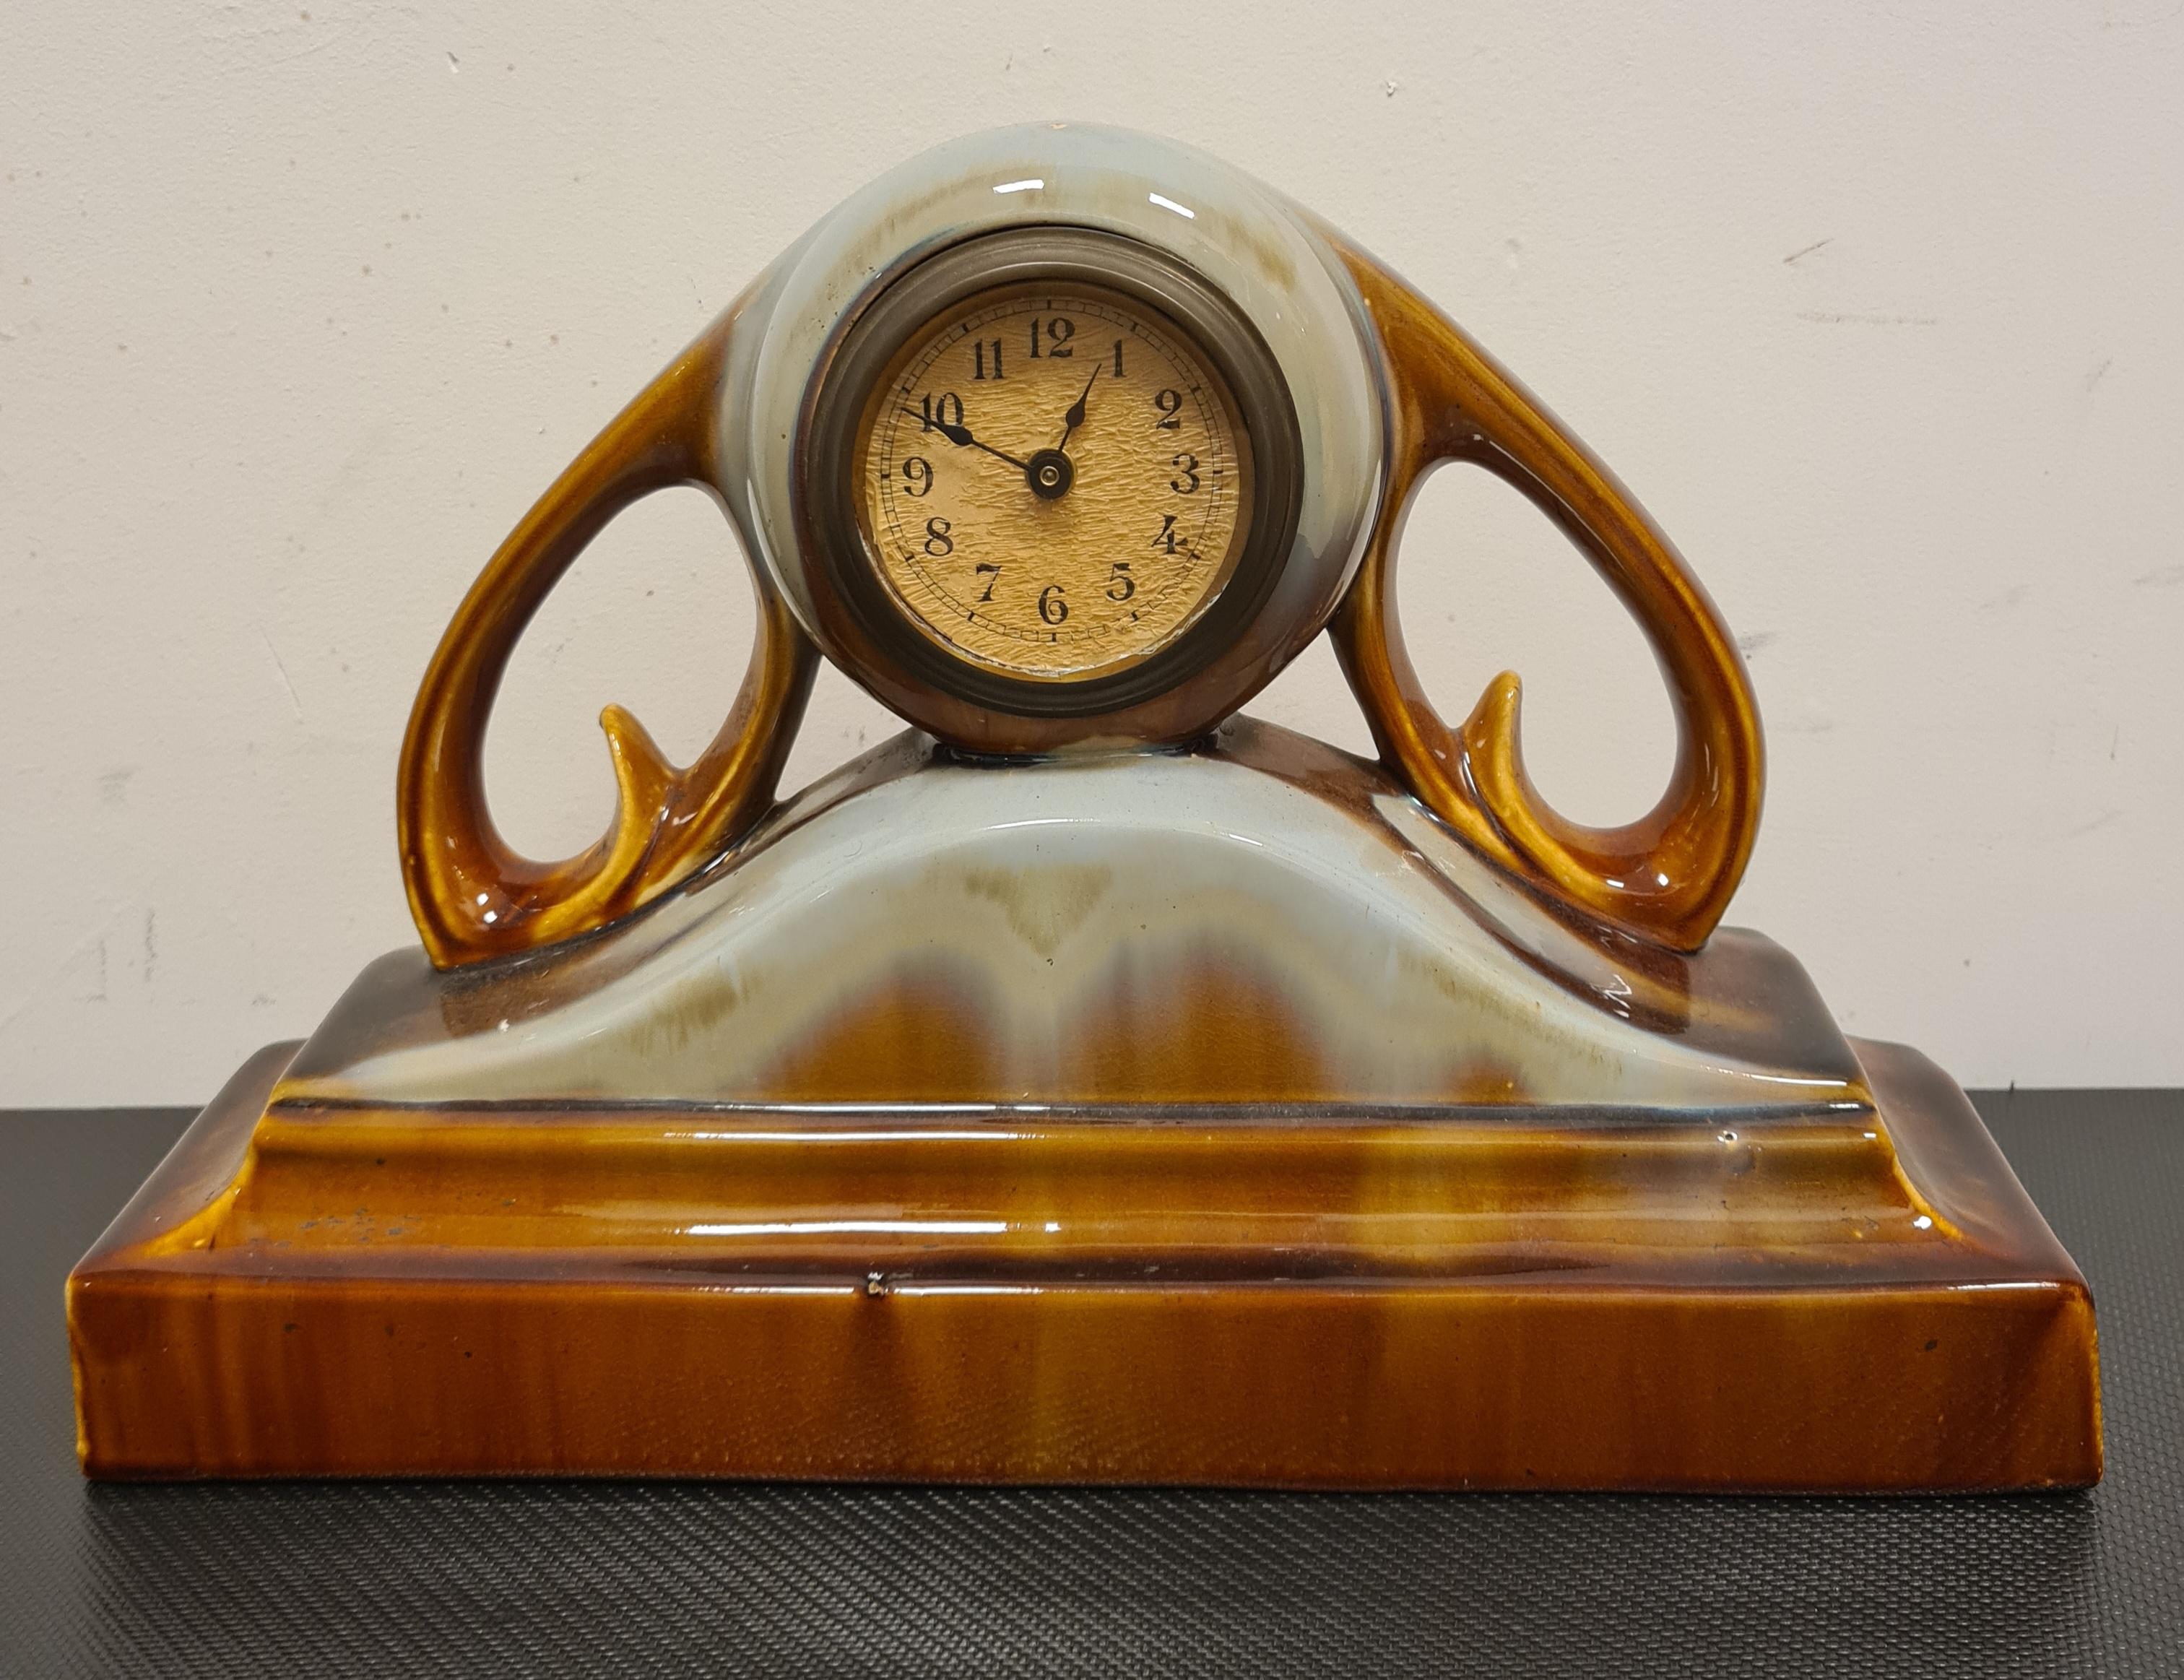 Keramische Uhr aus den 1940er Jahren.

Schöner Tafelaufsatz oder Kaminsimsuhr aus den 1940er Jahren.

Die Struktur ist vollständig aus glasierter Keramik in Brauntönen bis hin zu Hellblau gefertigt.

Die Uhr ist funktionsfähig und mit einem